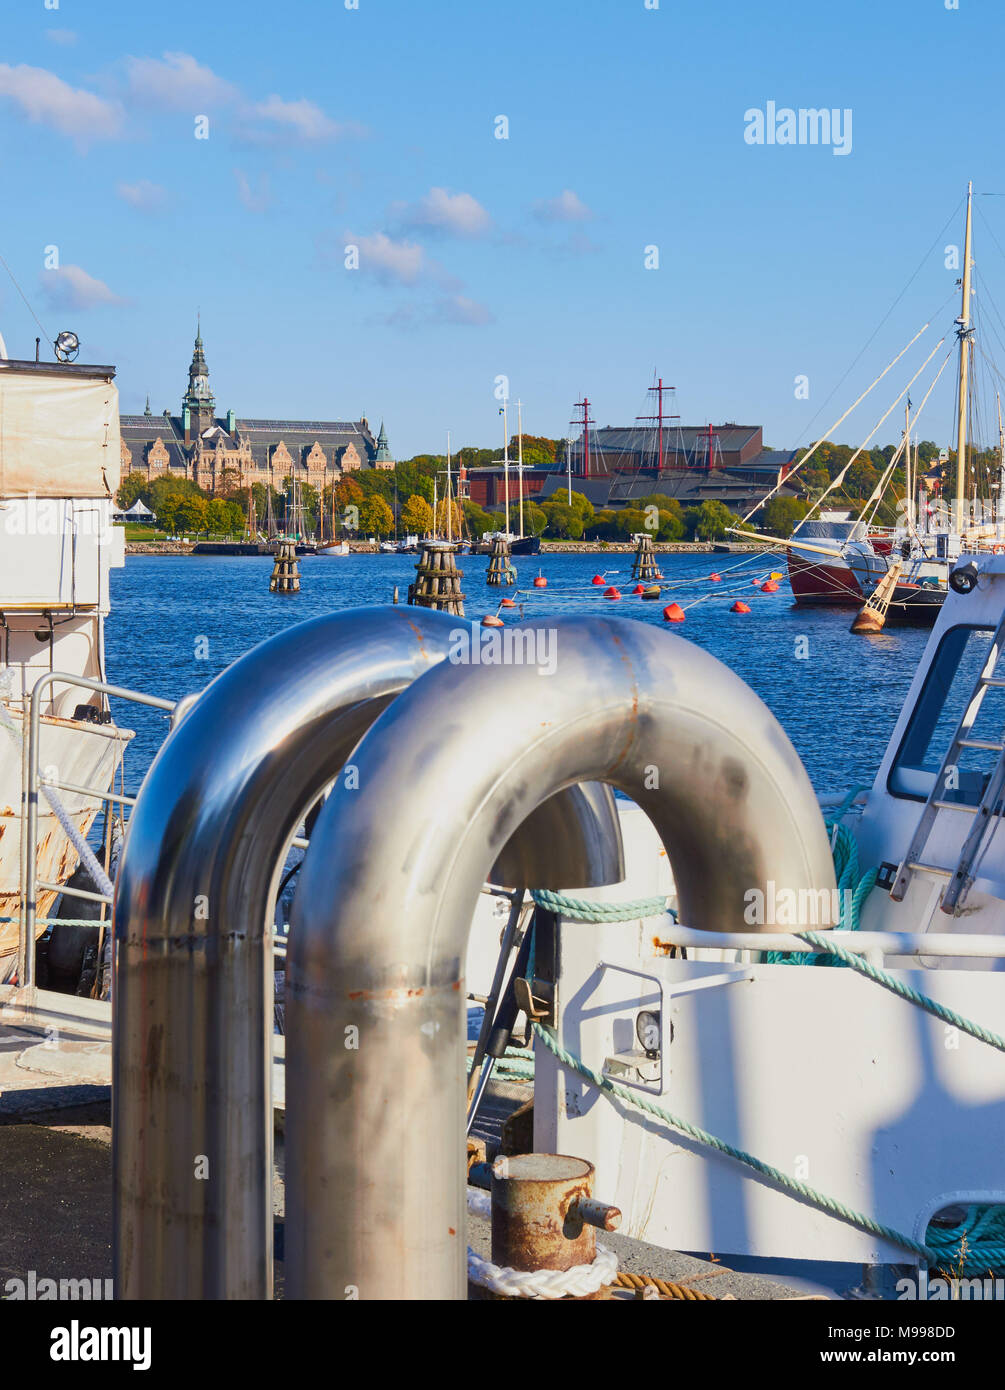 Vue du front de mer vers Djurgarden Norrmalm avec à gauche Nordiska Museet et droit Vasamuseet, Stockholm, Suède, Scandinavie Banque D'Images